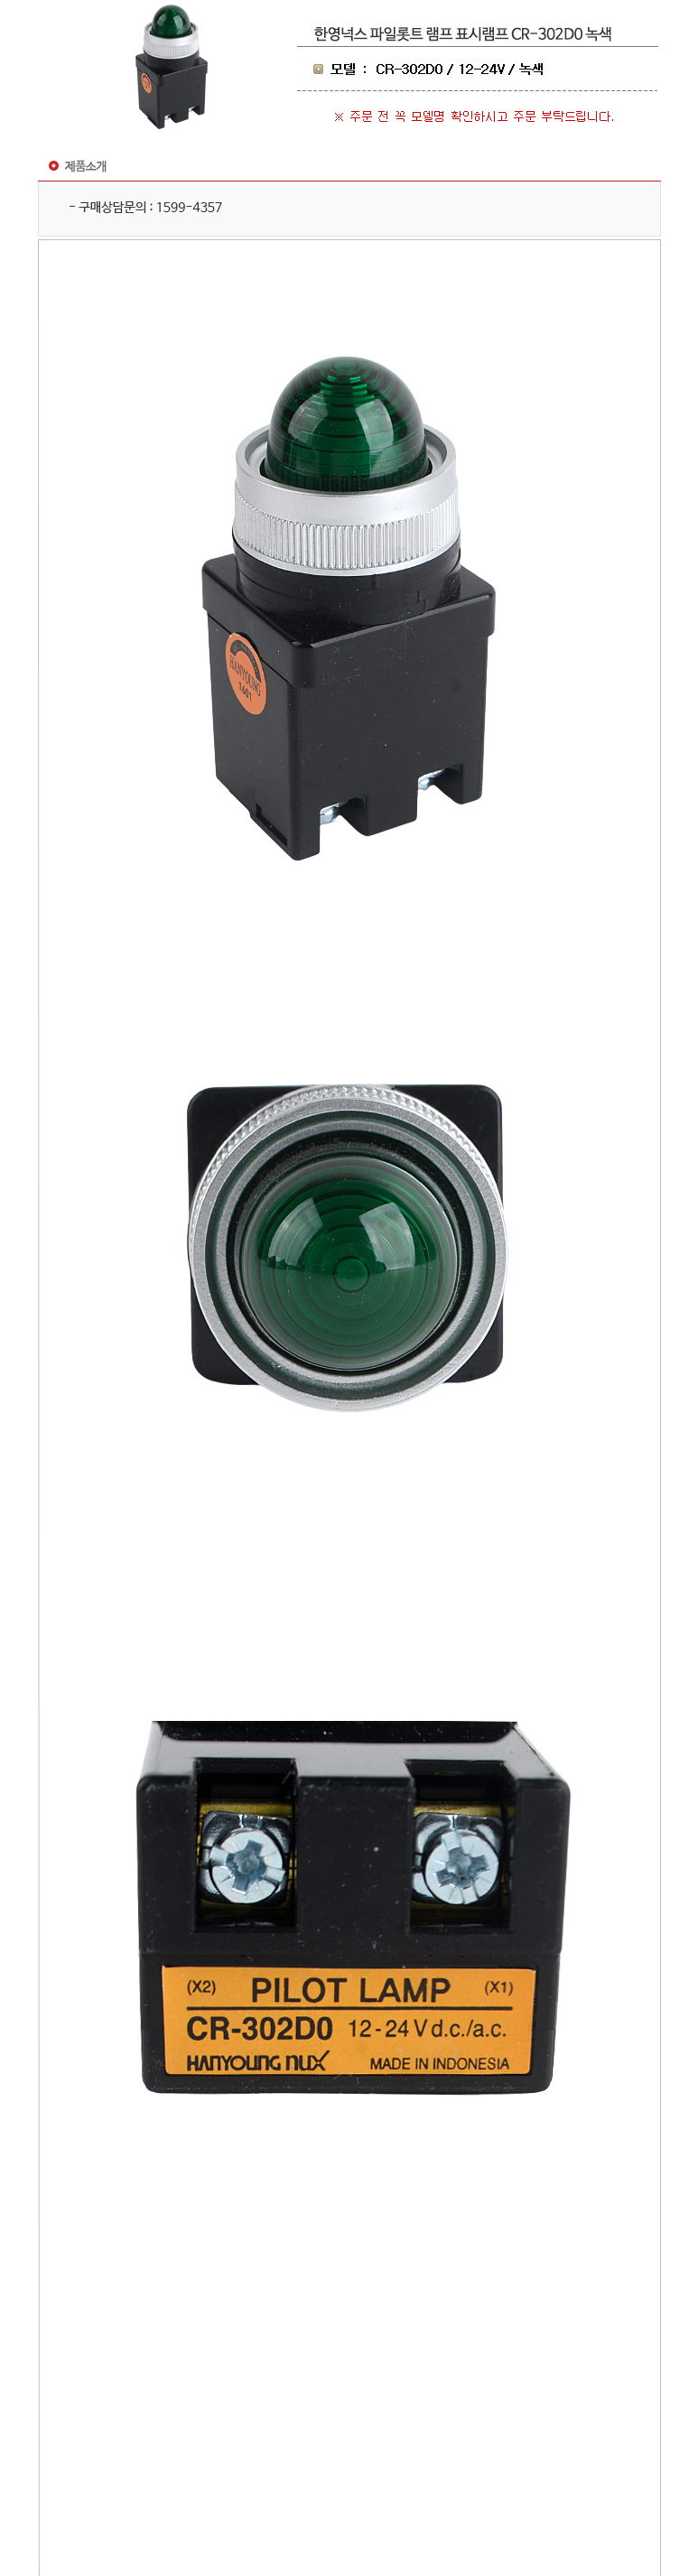 헬프텔 파일롯트램프 CR-302D0 12-24V 녹색